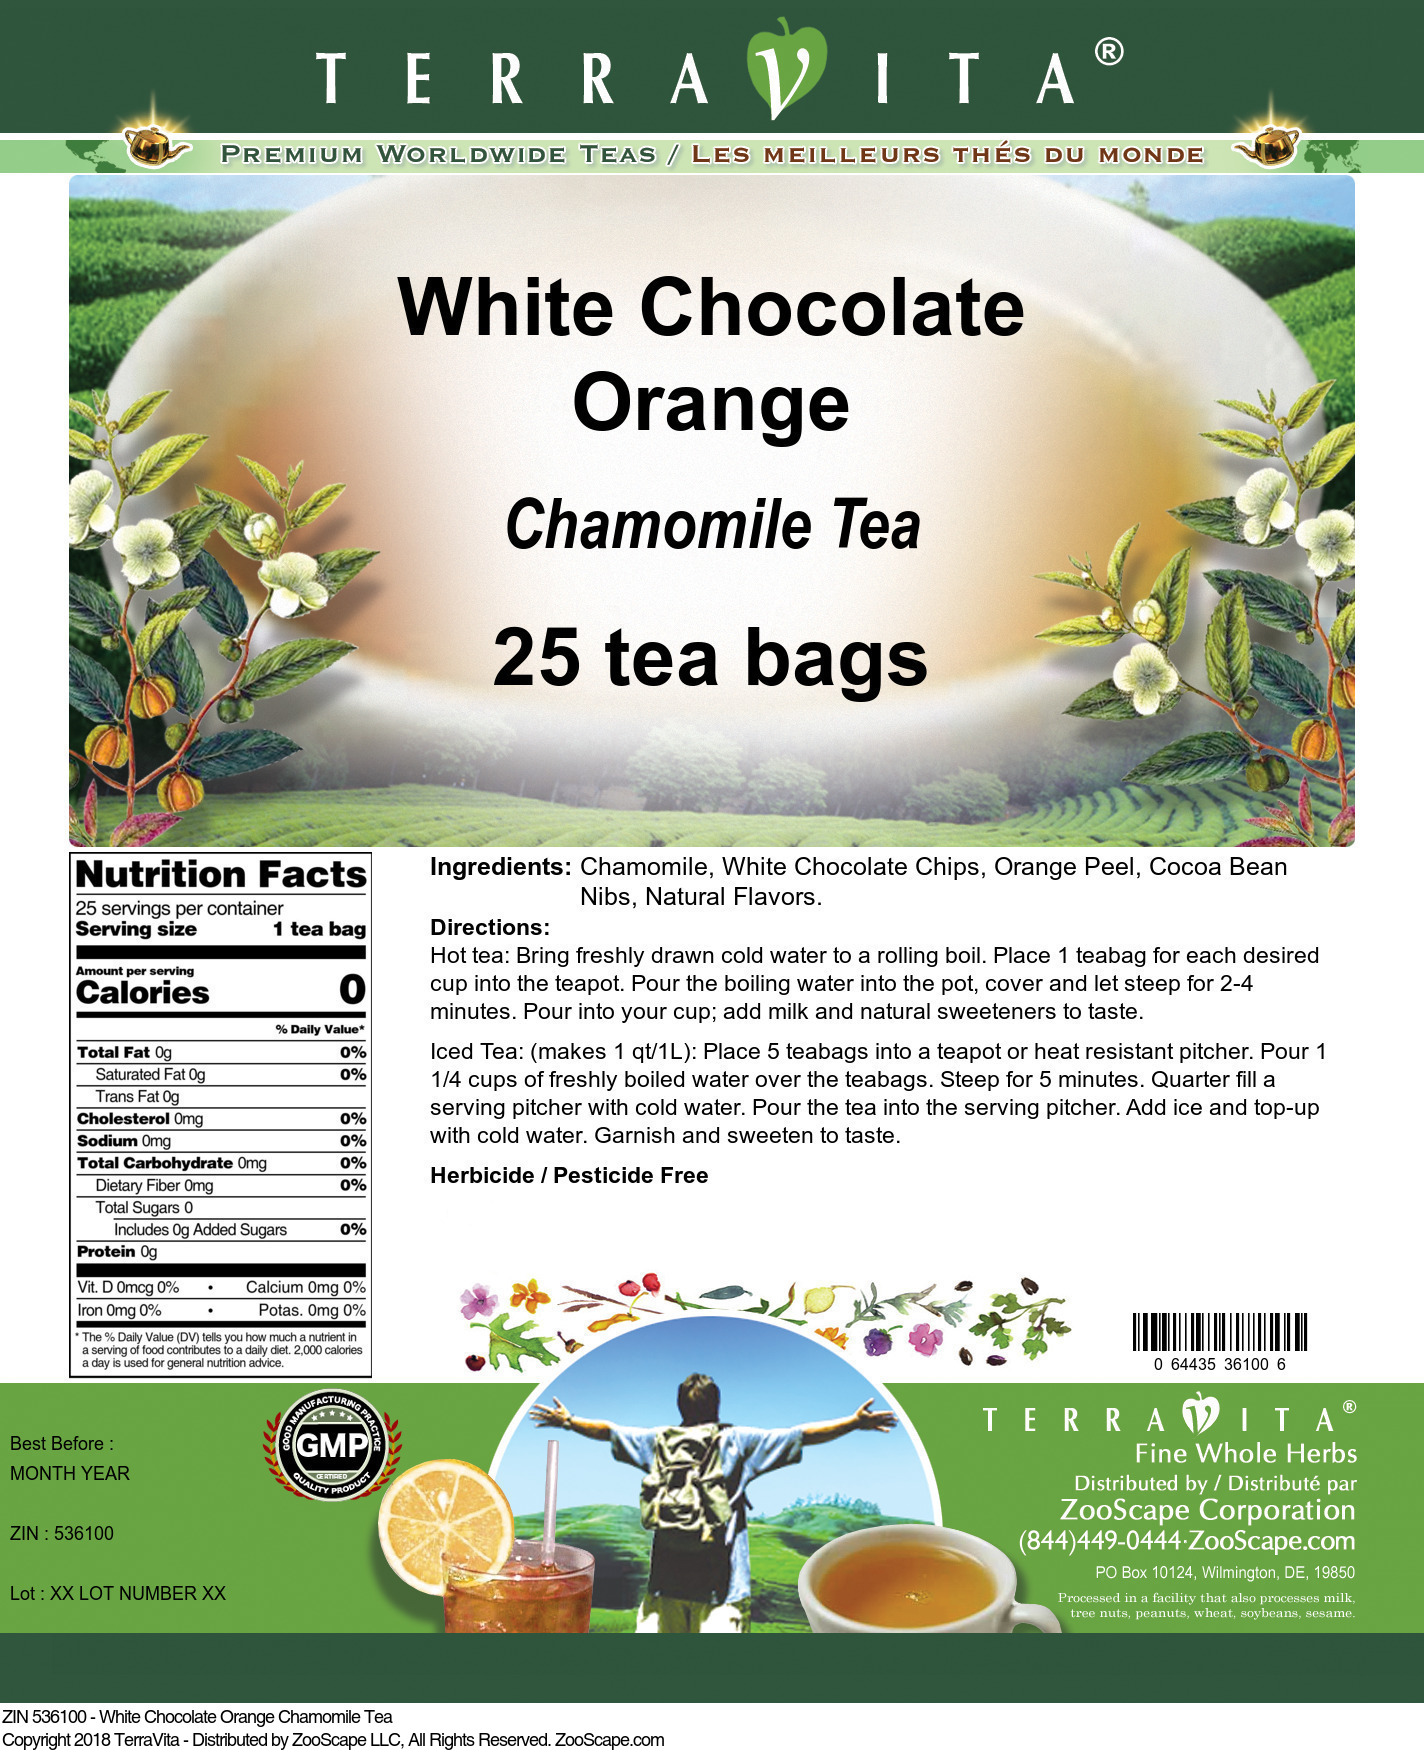 White Chocolate Orange Chamomile Tea - Label